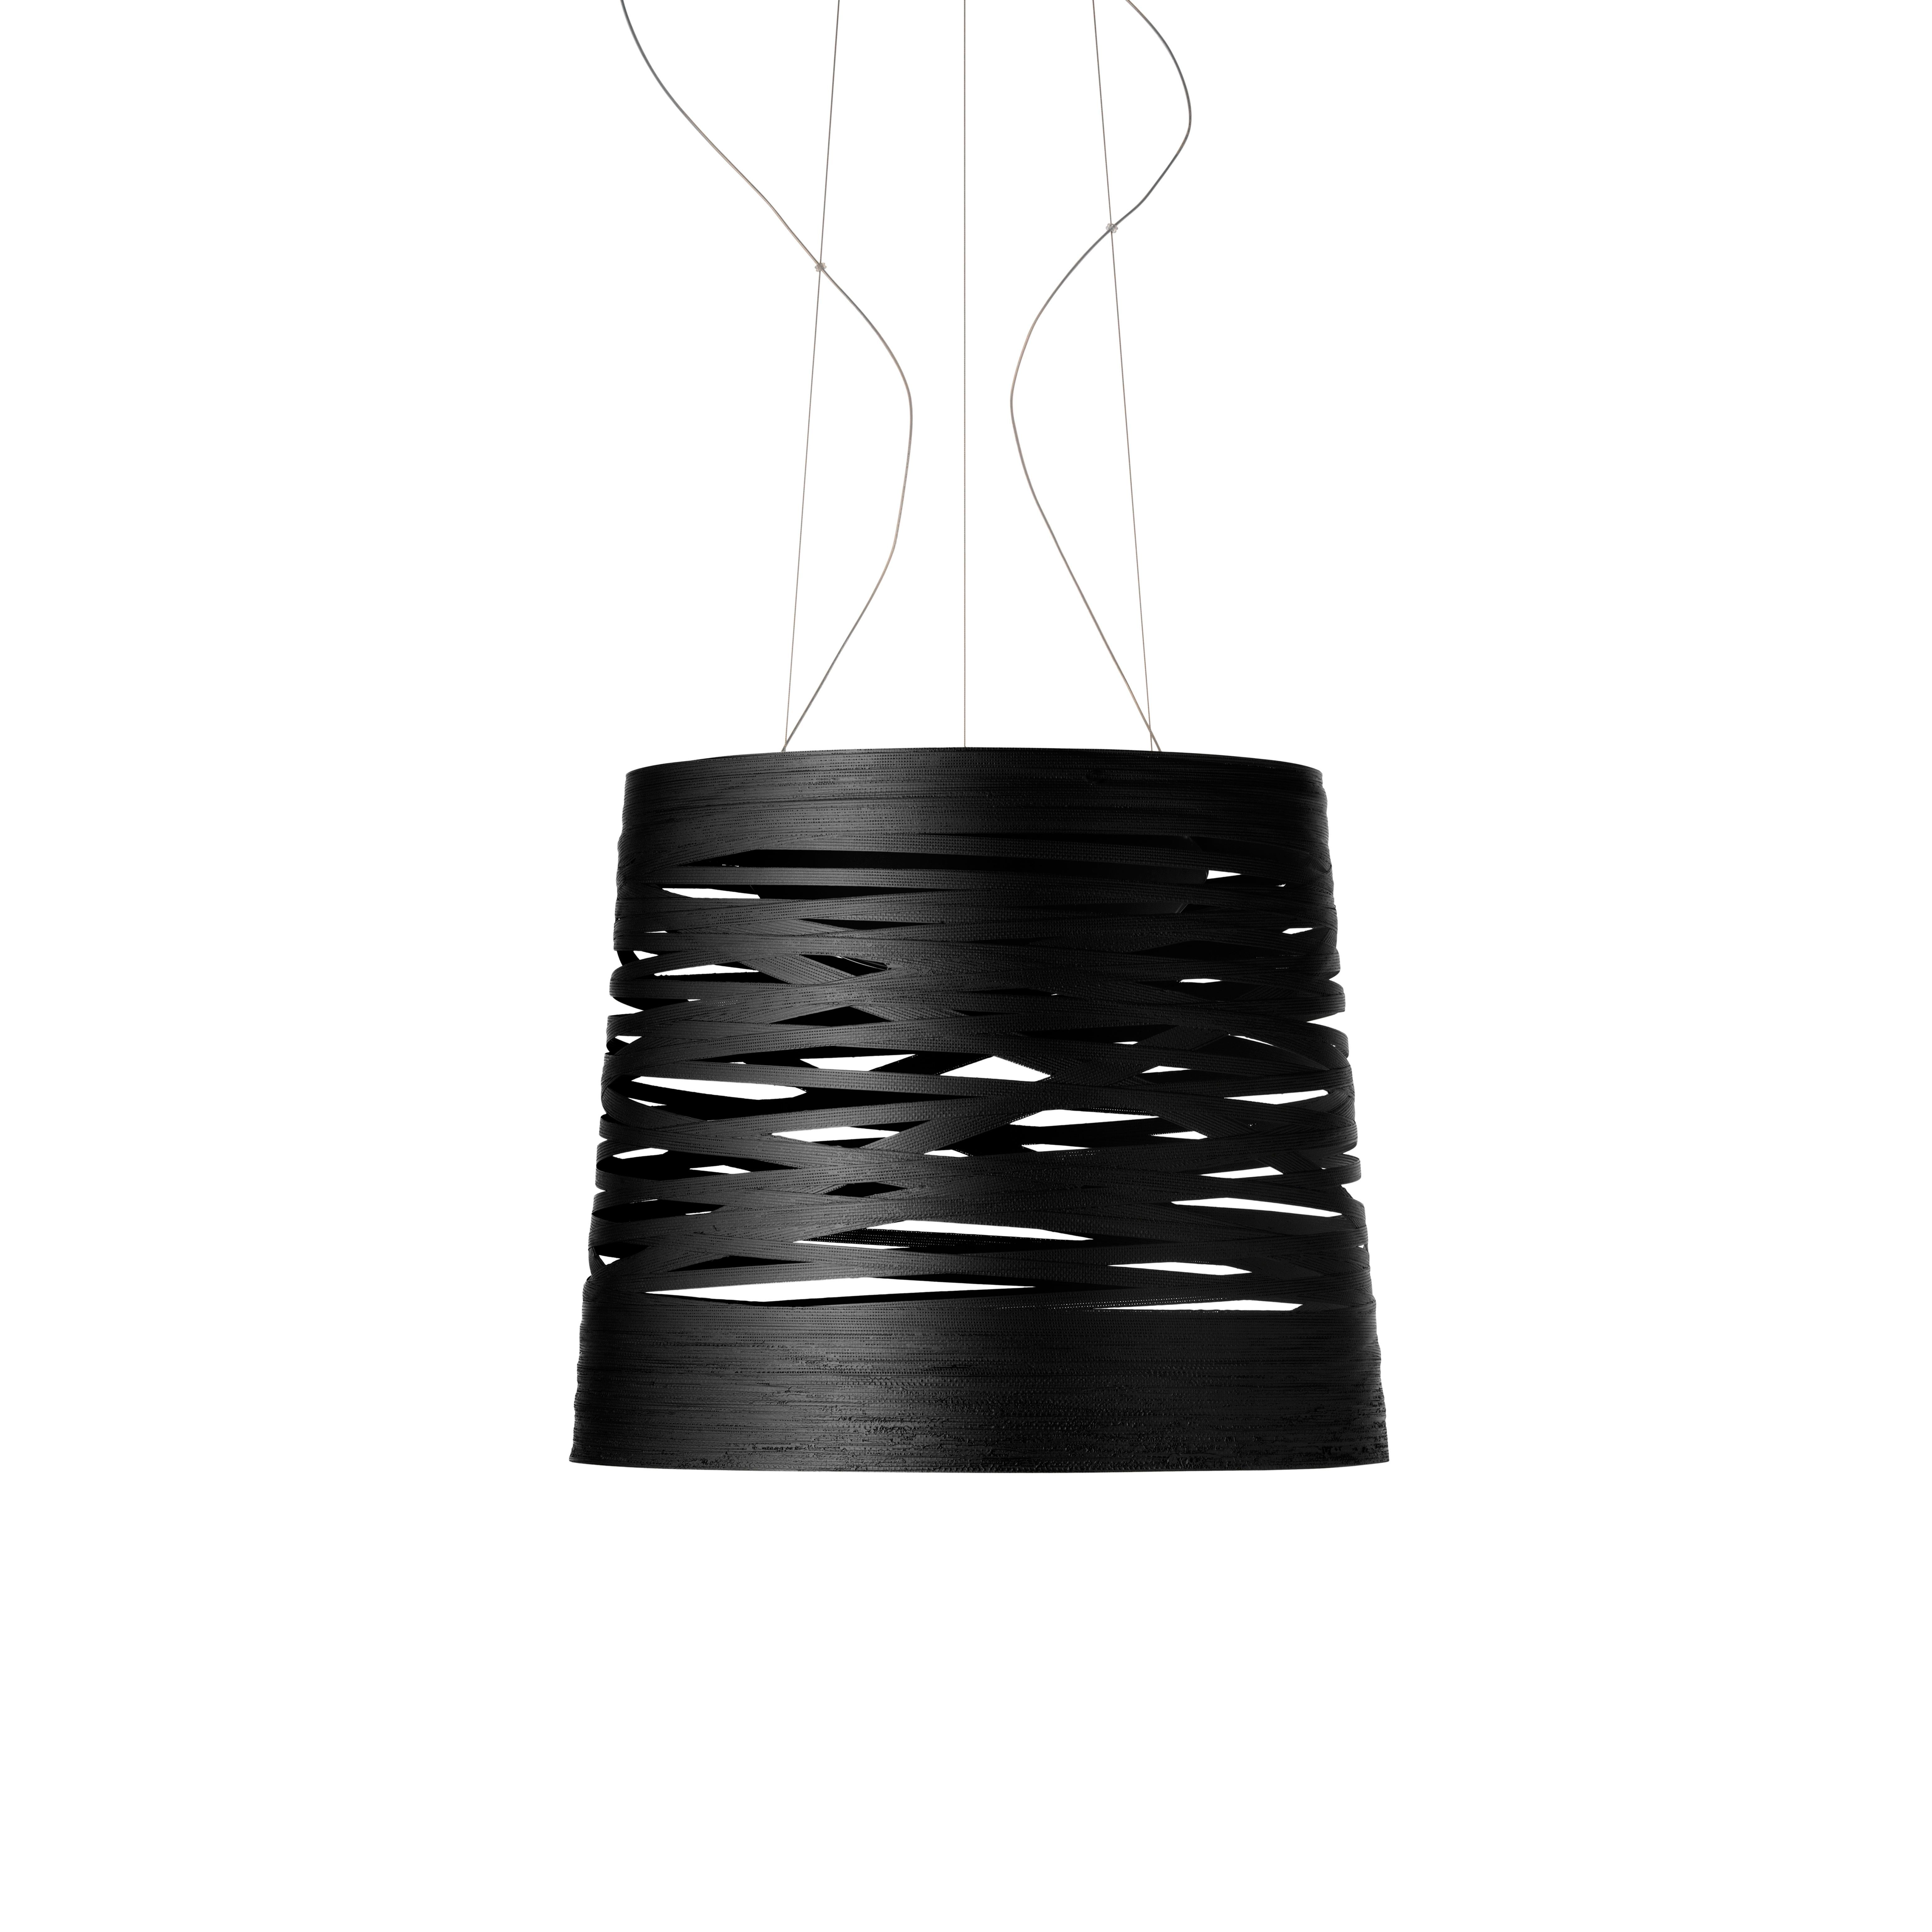 Entrelacement magique de blocs et de vides, la lampe Tress est fabriquée selon un procédé artisanal, en enroulant un ruban de matériau composite. Grâce également au choix de différentes couleurs et formes, Tress peut interpréter de multiples